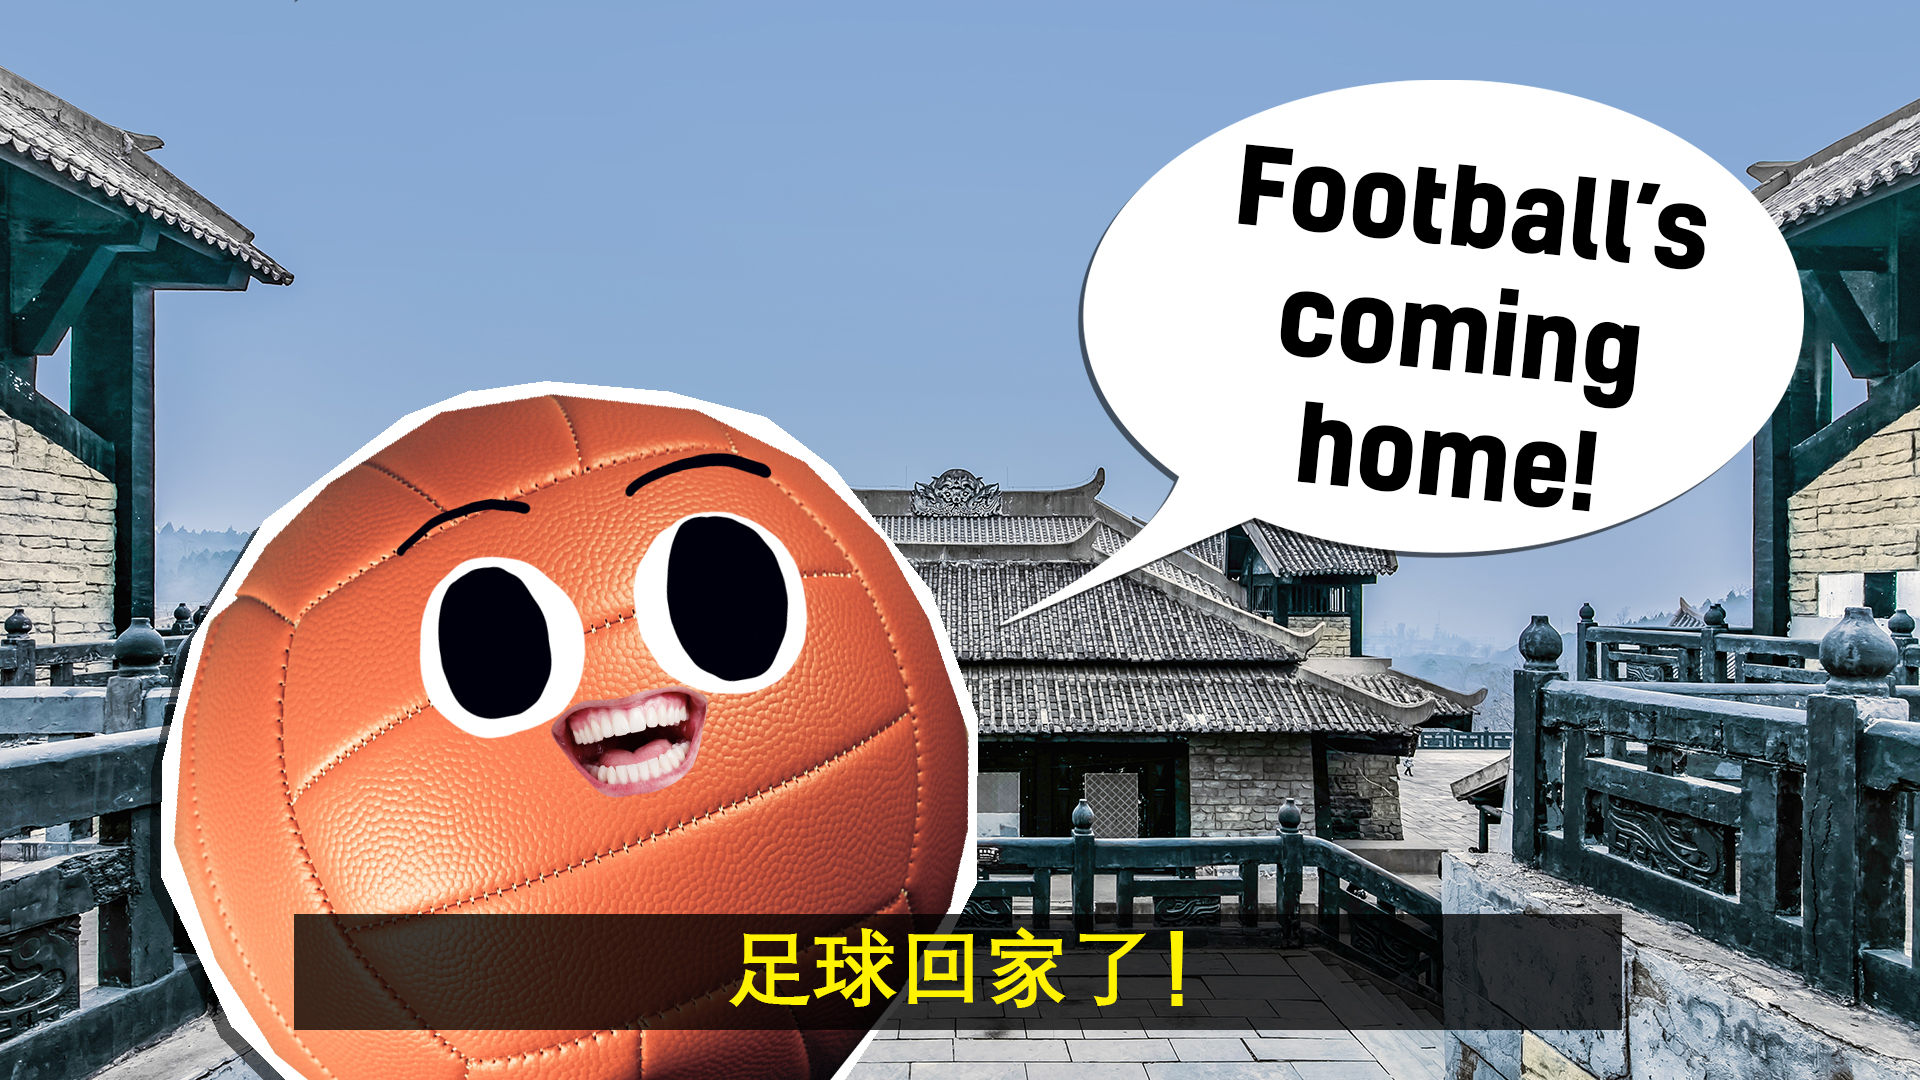 A Han Dynasty football